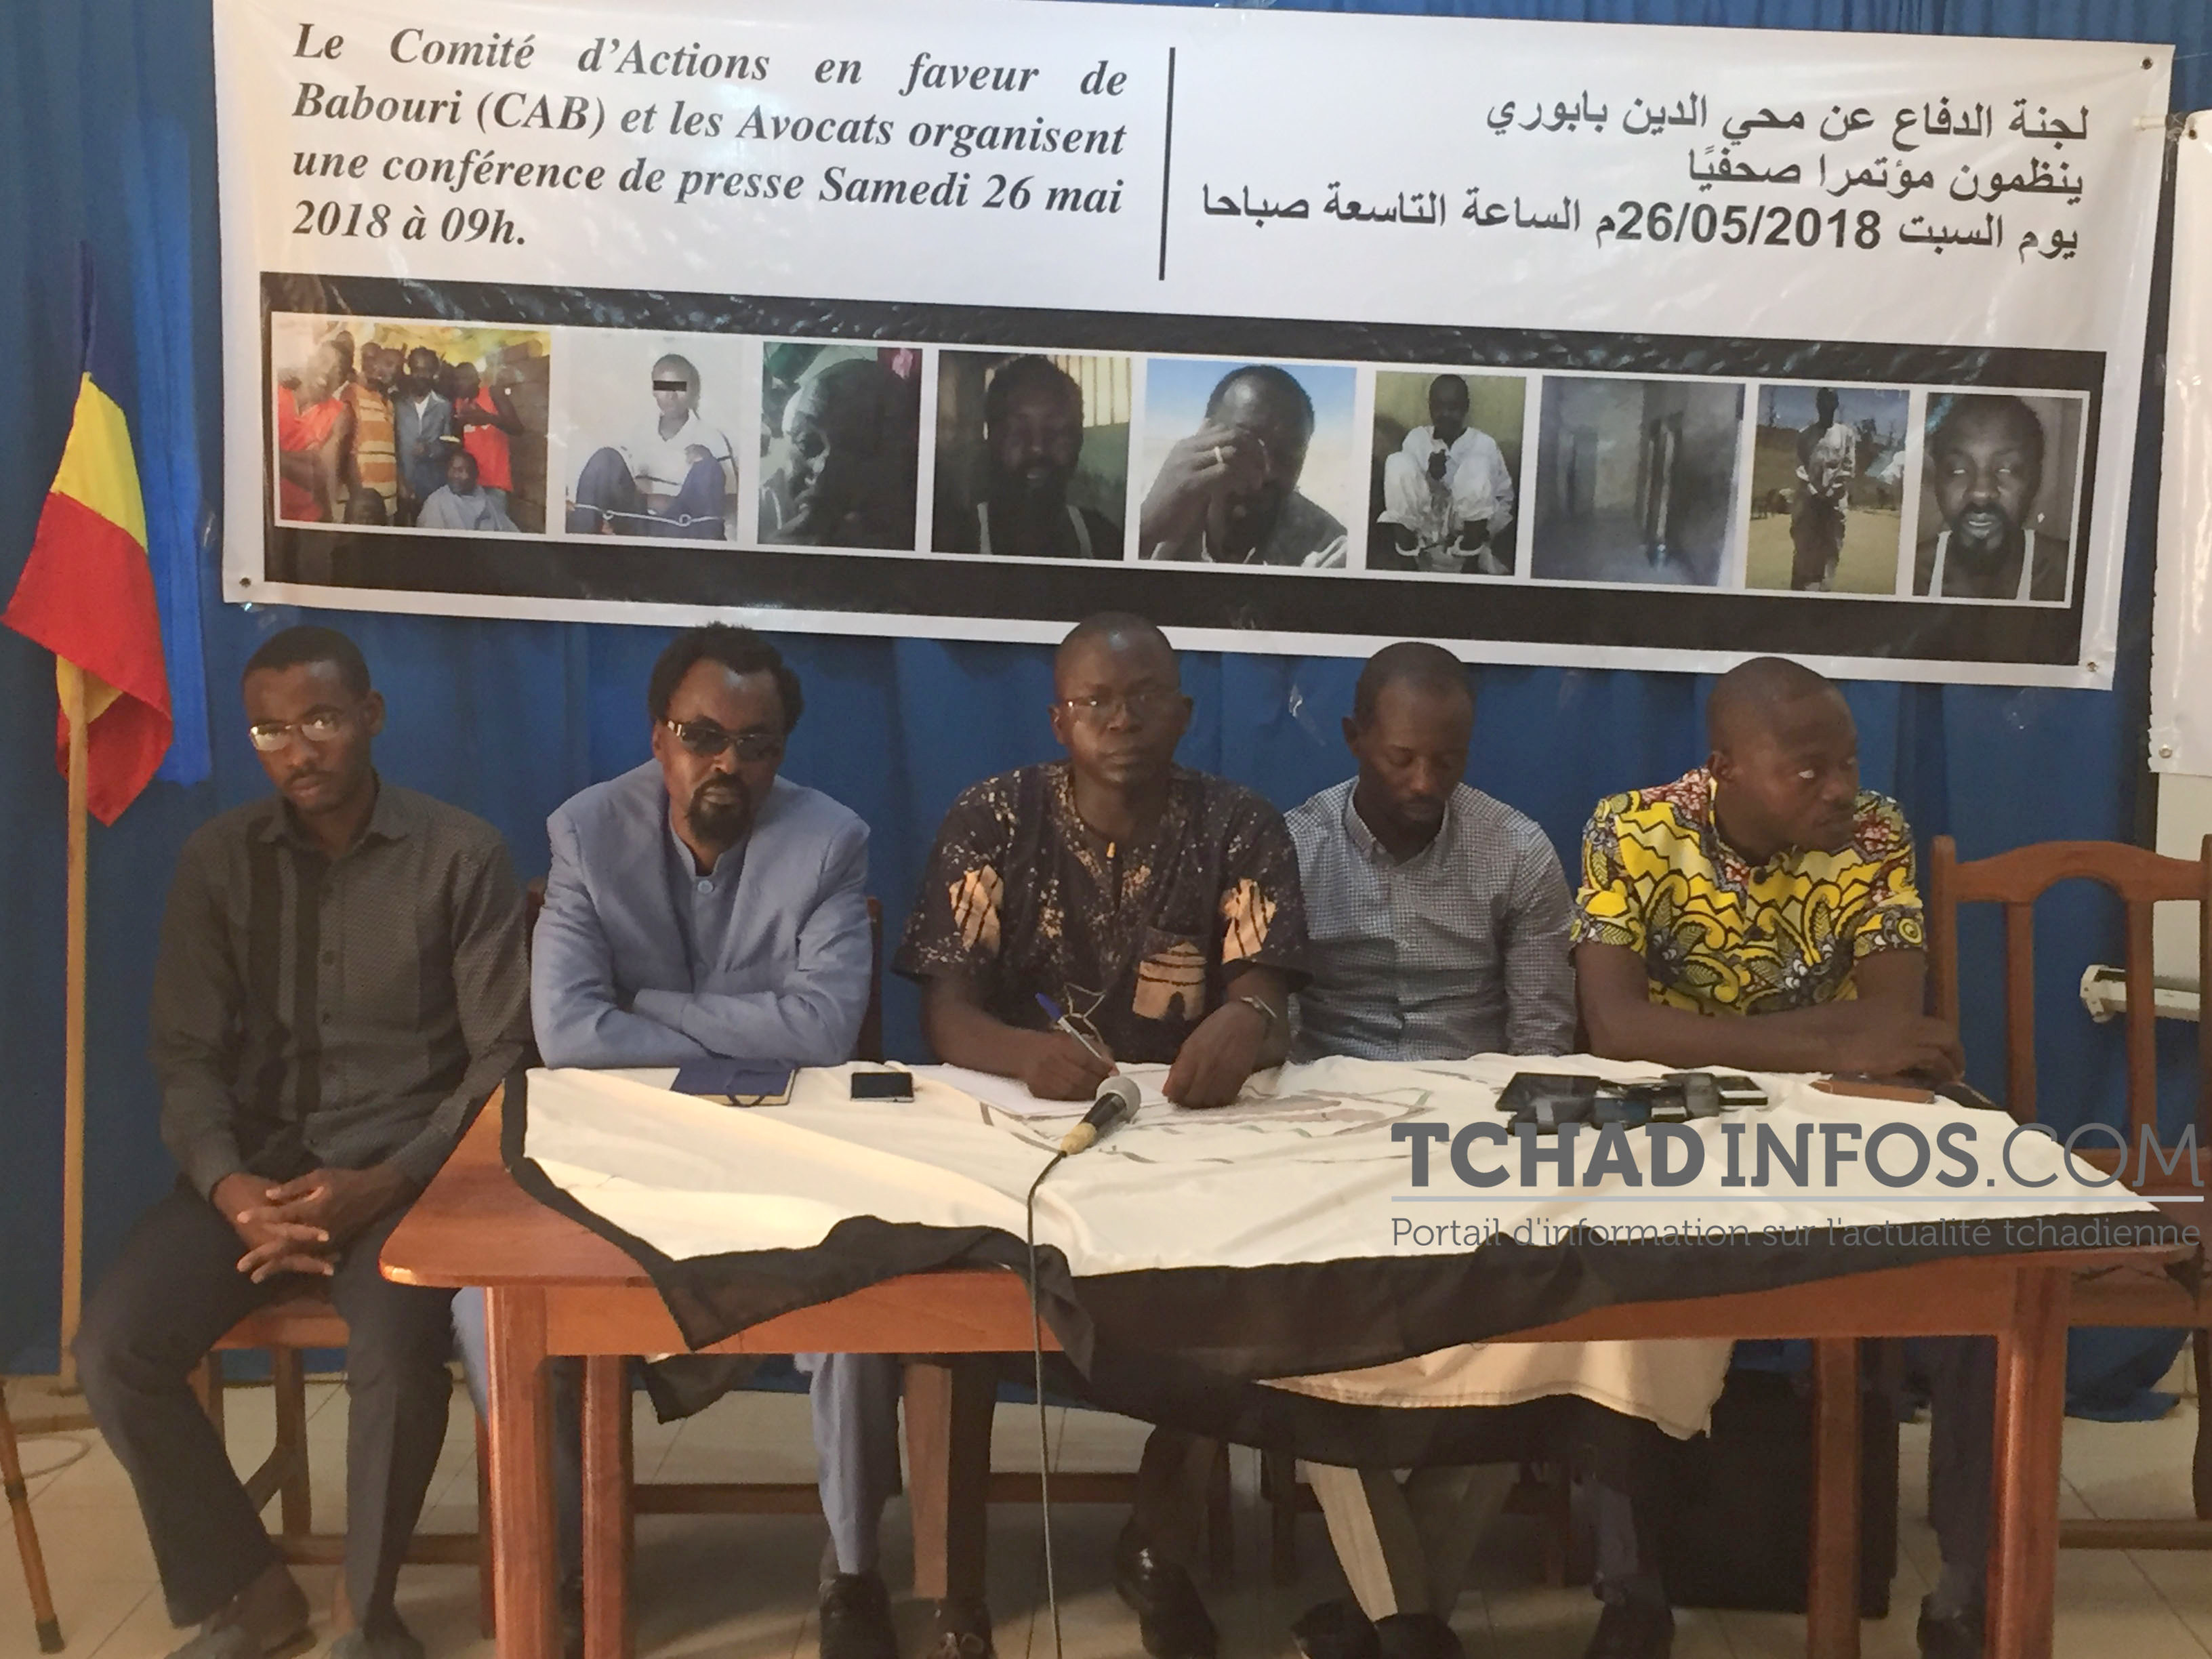 Tchad : Babouri Mayadine toujours a Koro Toro mais des négociations sont en cours